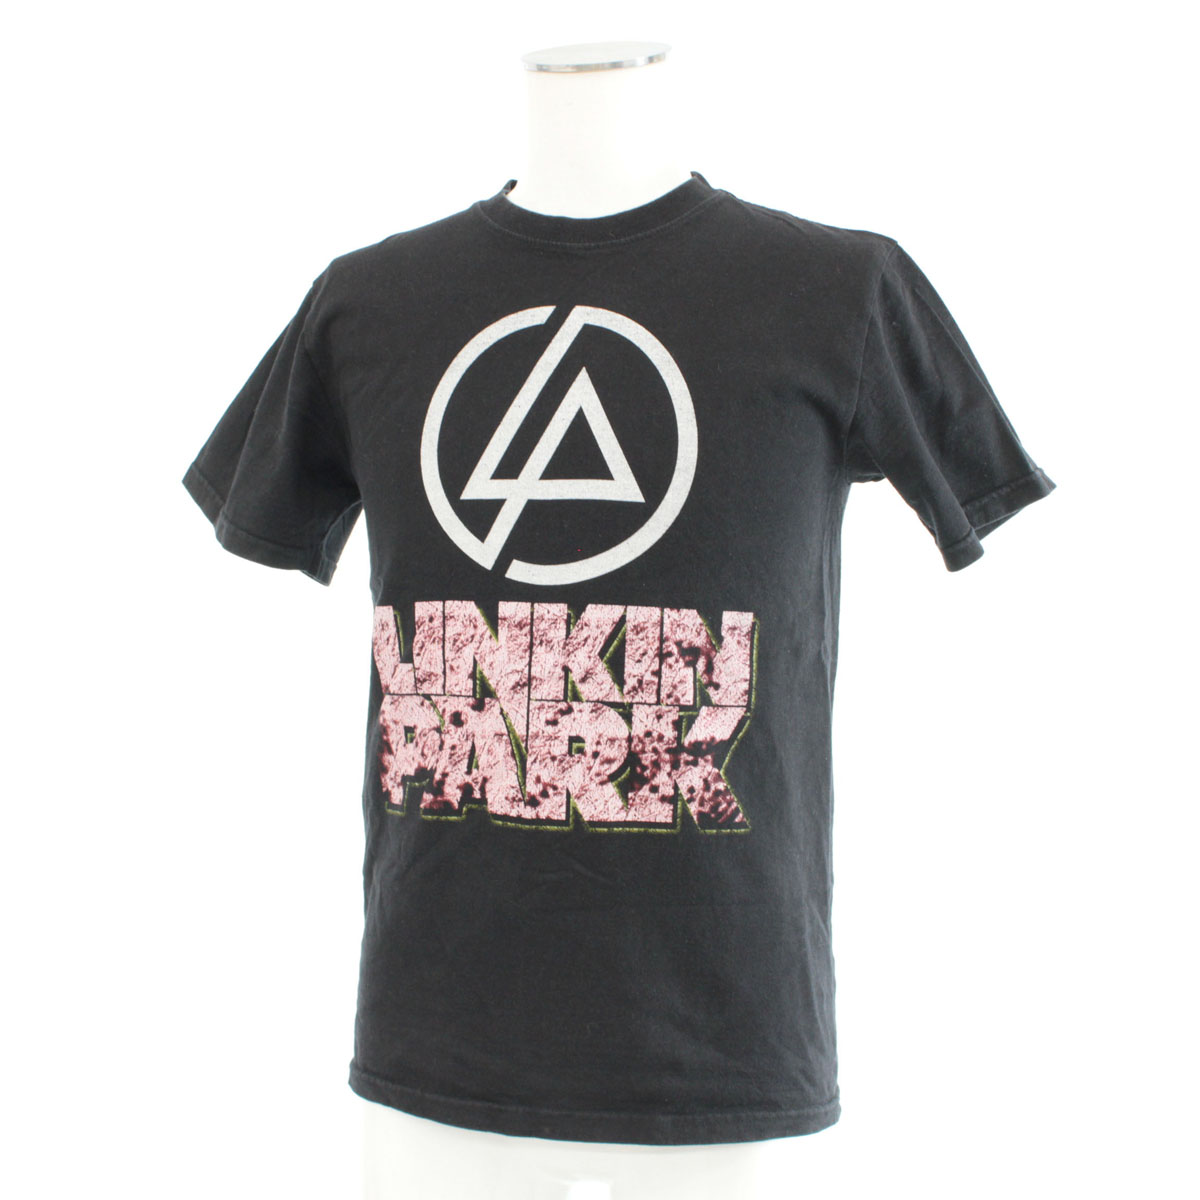 楽天市場 Linkin Park リンキンパーク 半袖tシャツ Mサイズ Black 黒 ブラック バンドtシャツ ロゴブリント クルーネック メンズ トップス 中古 リサイクル ティファナ